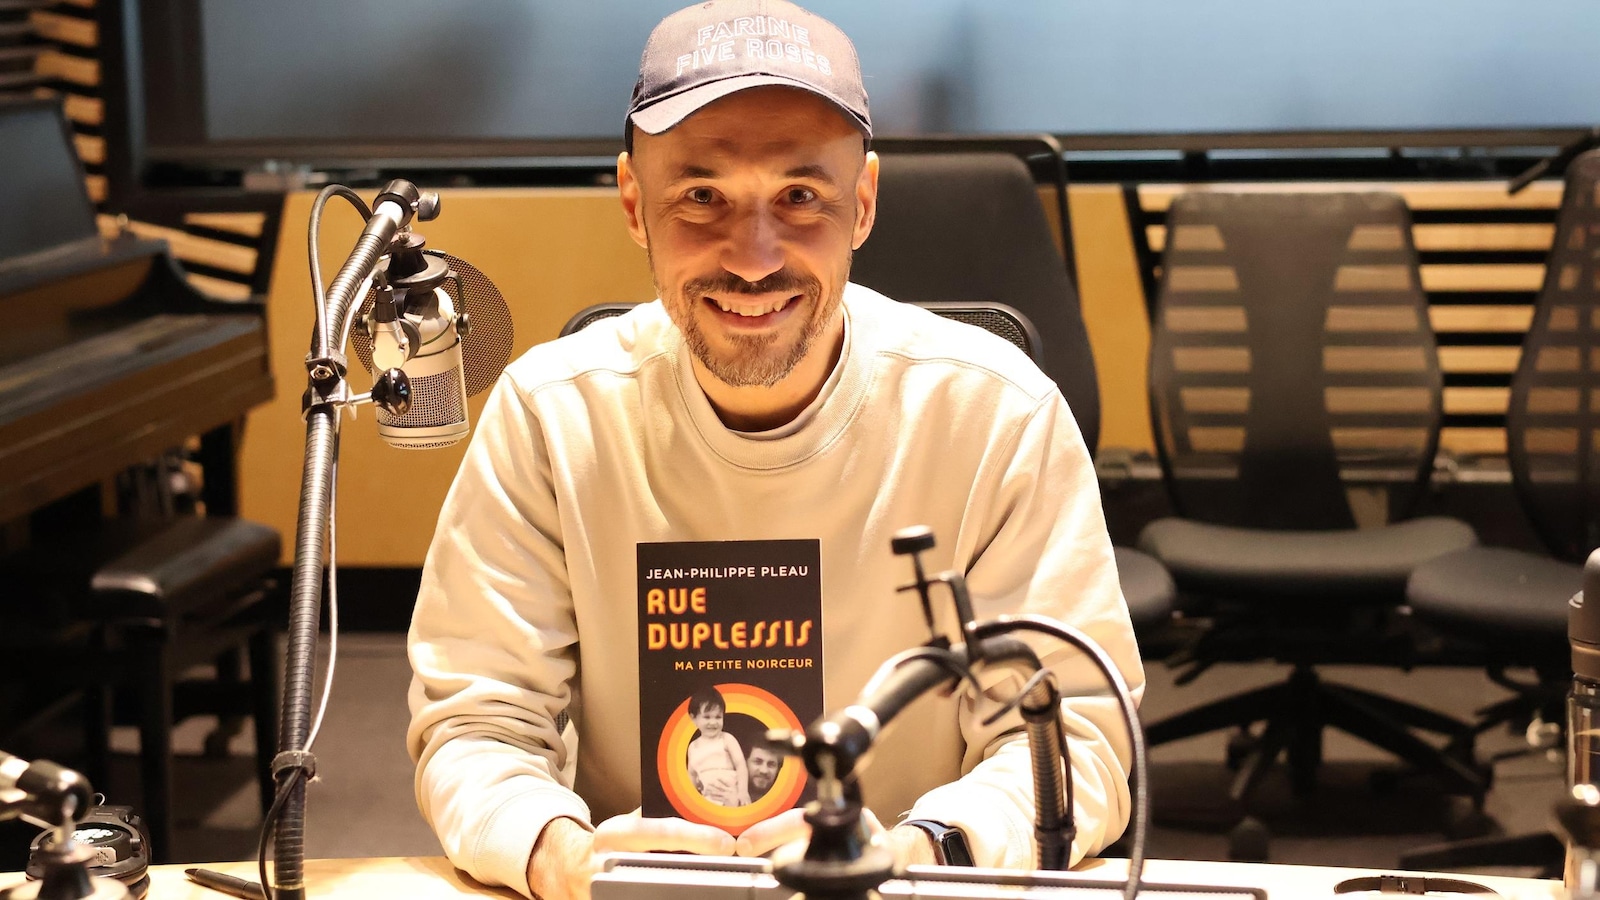 Dans un studio de radio, Jean-Philippe Pleau montre son livre « Rue Duplessis : ma petite noirceur ».